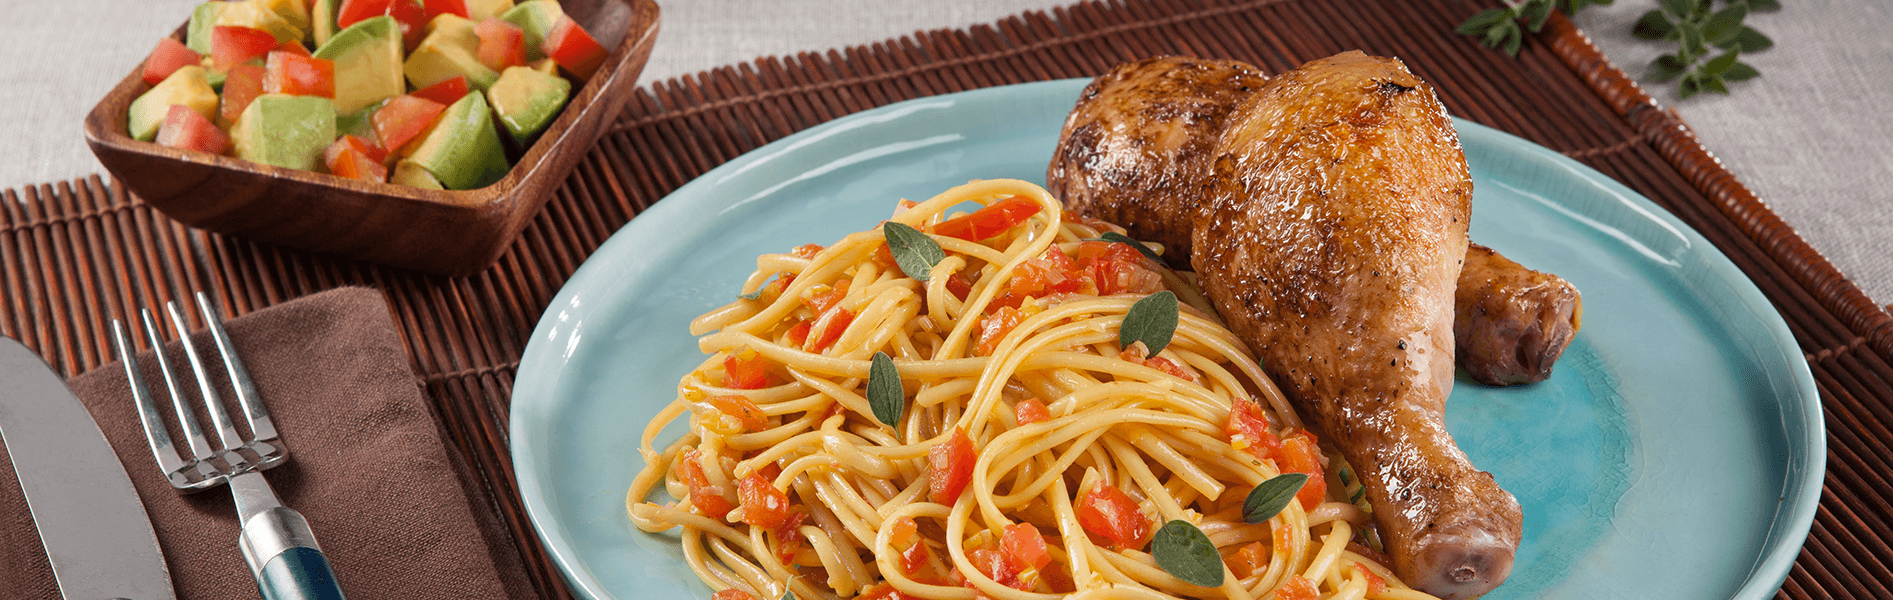 Spaghetti Doria sabor Pollo Asado con piernas de pollo doradas